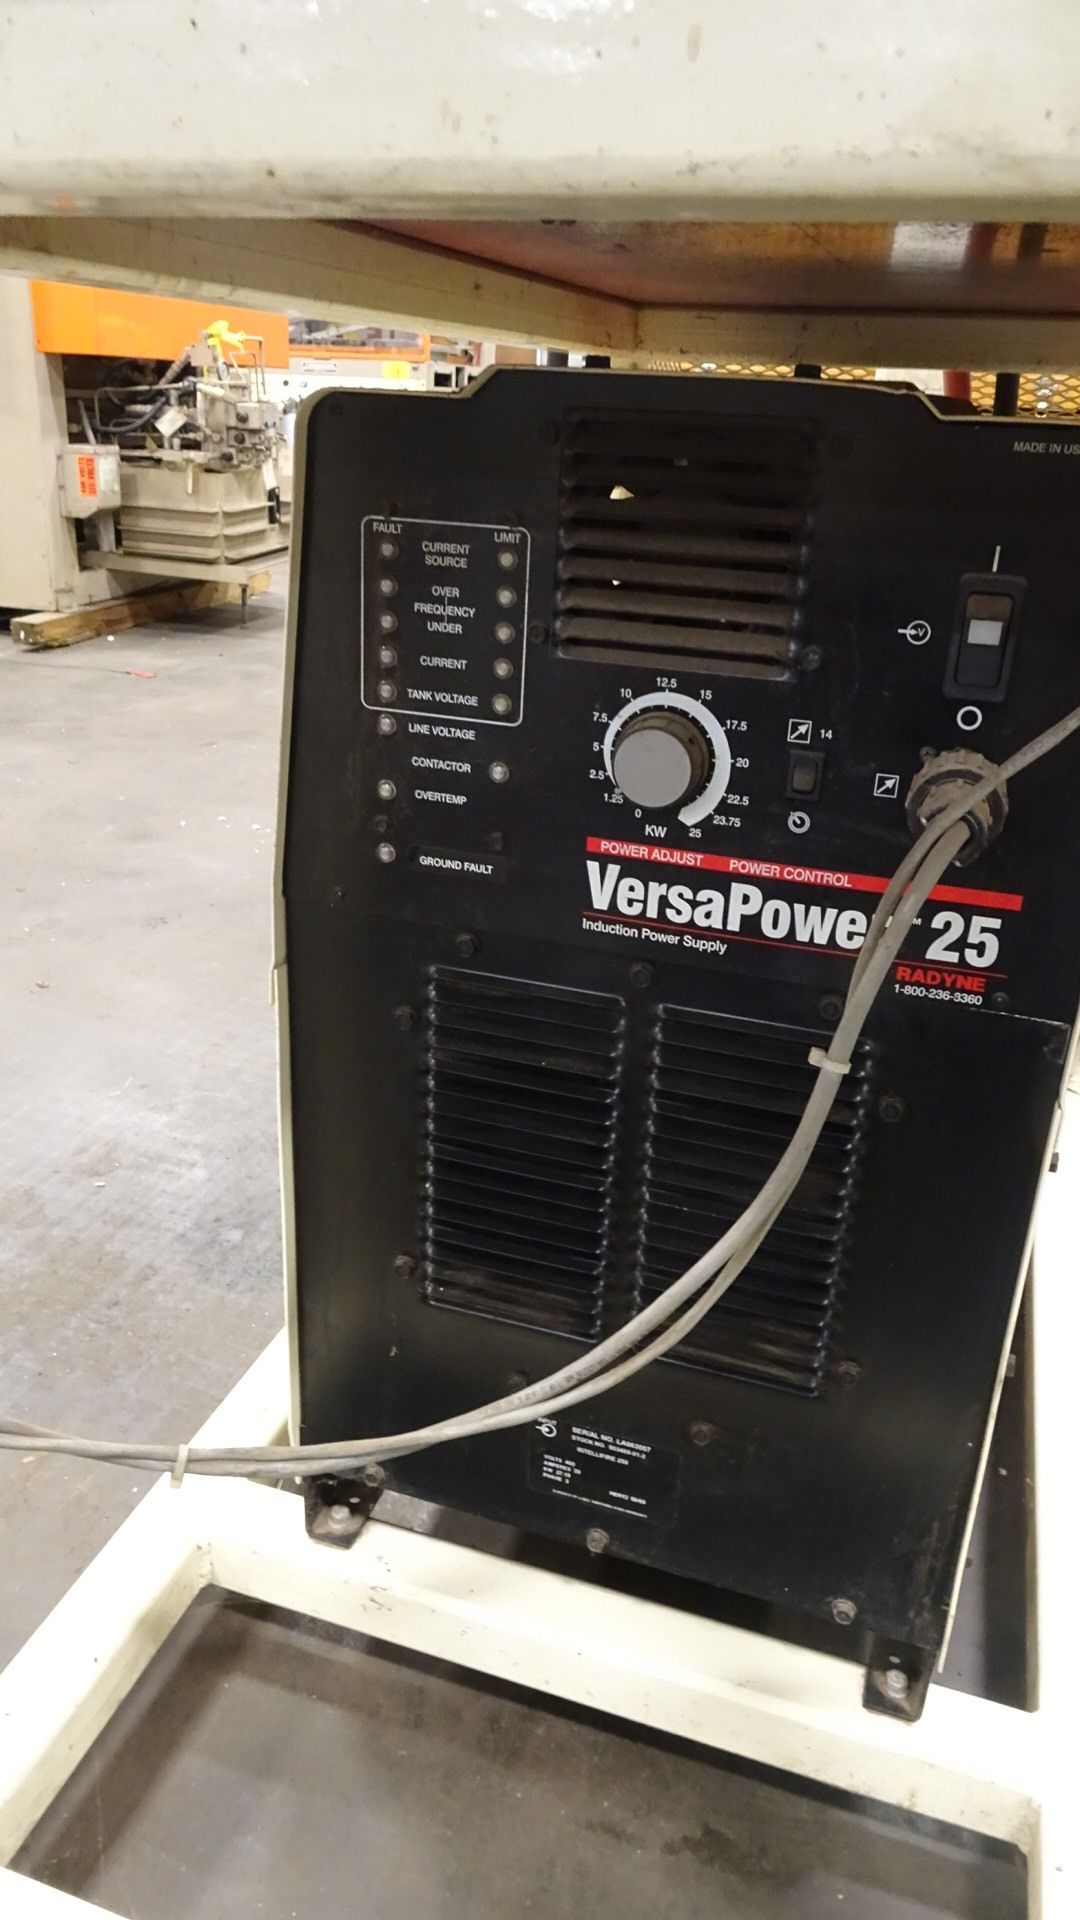 Pre-Heater System with Radyne Versapower 25 Welding Power Supply, sn:LA063057 - Bild 2 aus 3